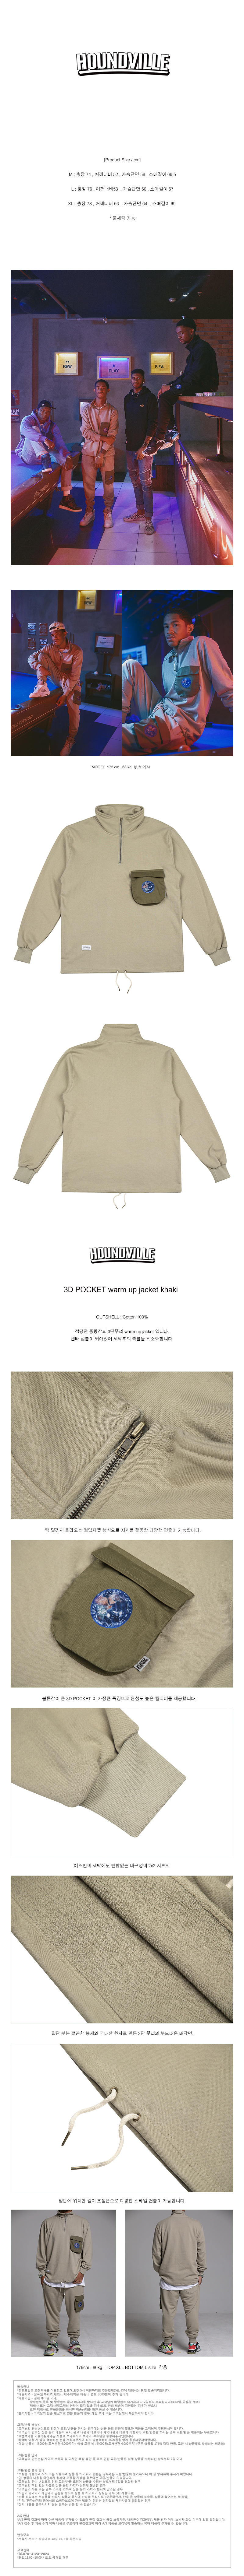 3D POCKET warm up jacket  khaki.jpg